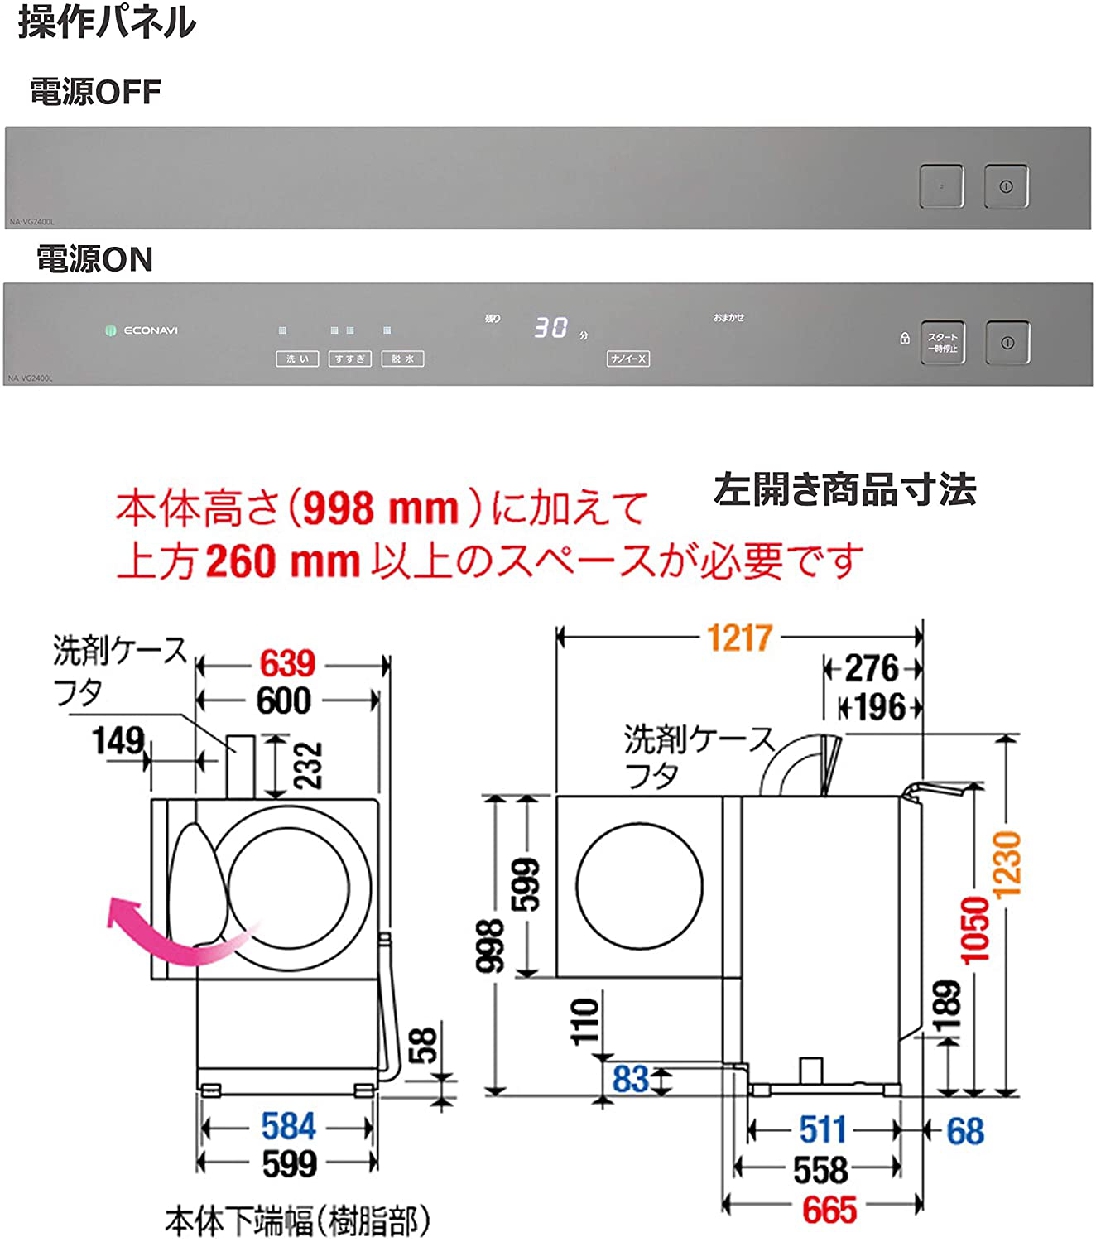 Panasonic(パナソニック) キューブル ななめドラム洗濯乾燥機 NA-VG2400の商品画像サムネ4 